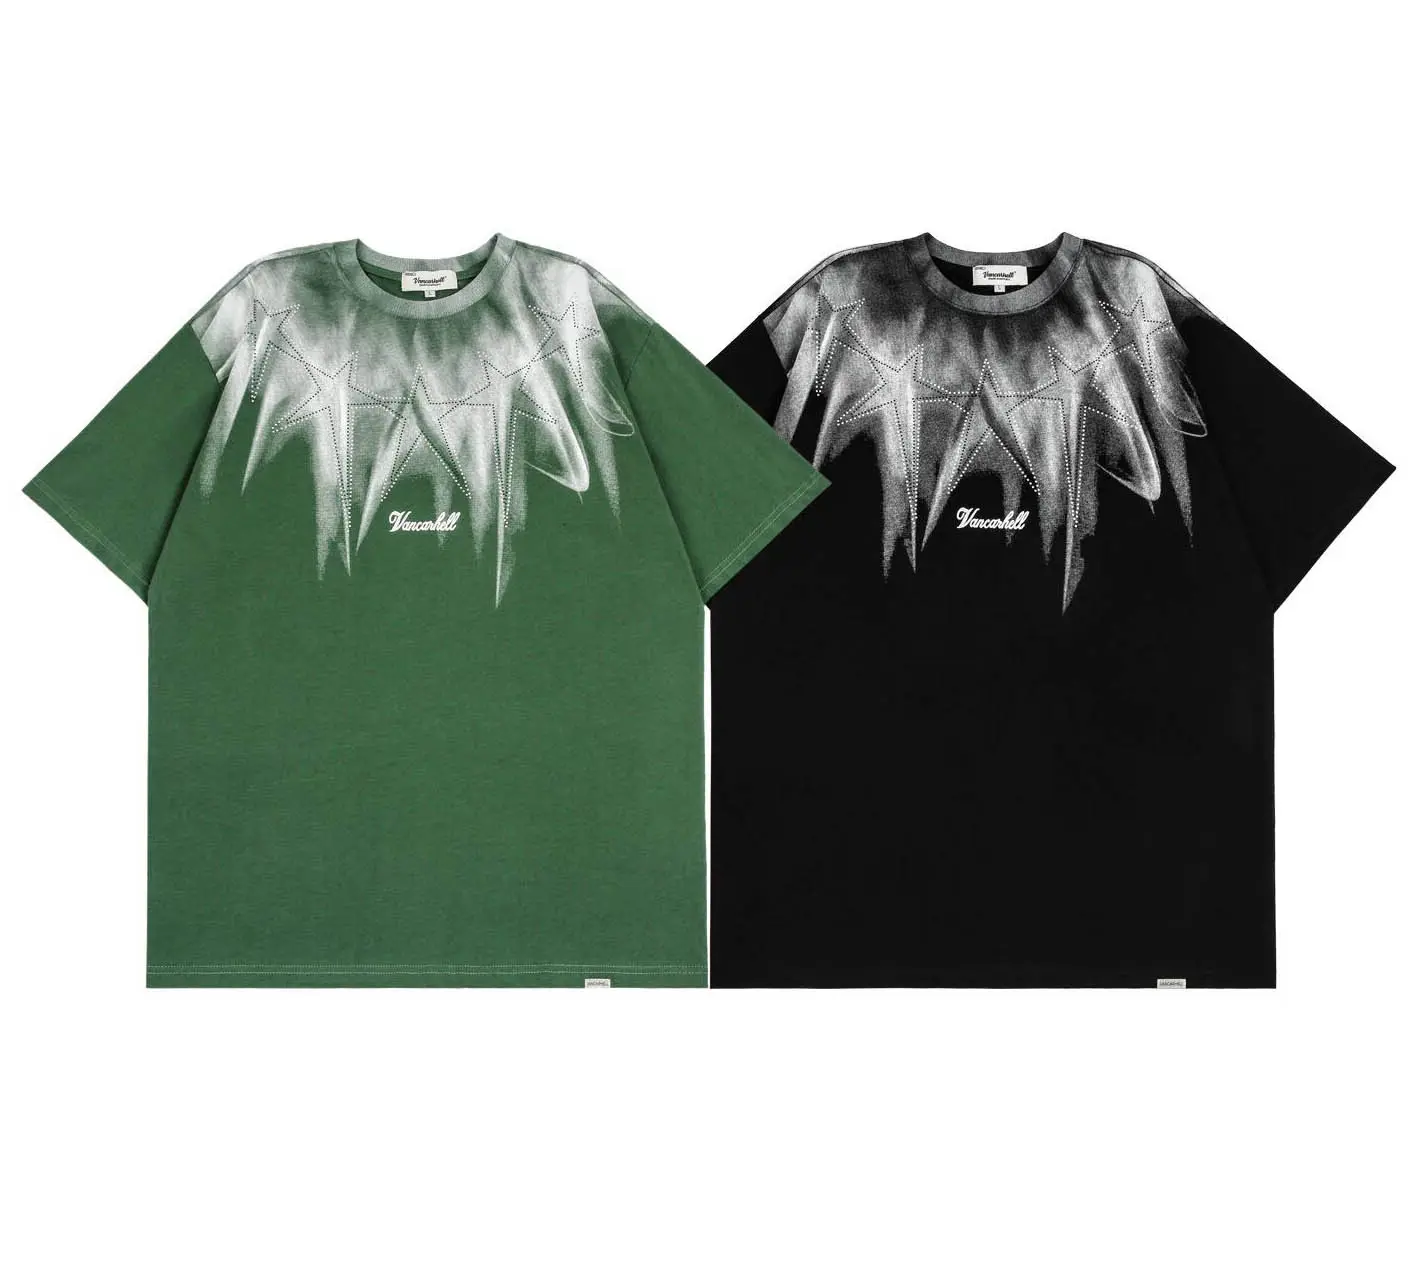 Özel erkekler için grafik T-shirt Rhinestones baskılı yüksek kalite Rhinestones ısı demir ile Transfer tasarımları T shirt